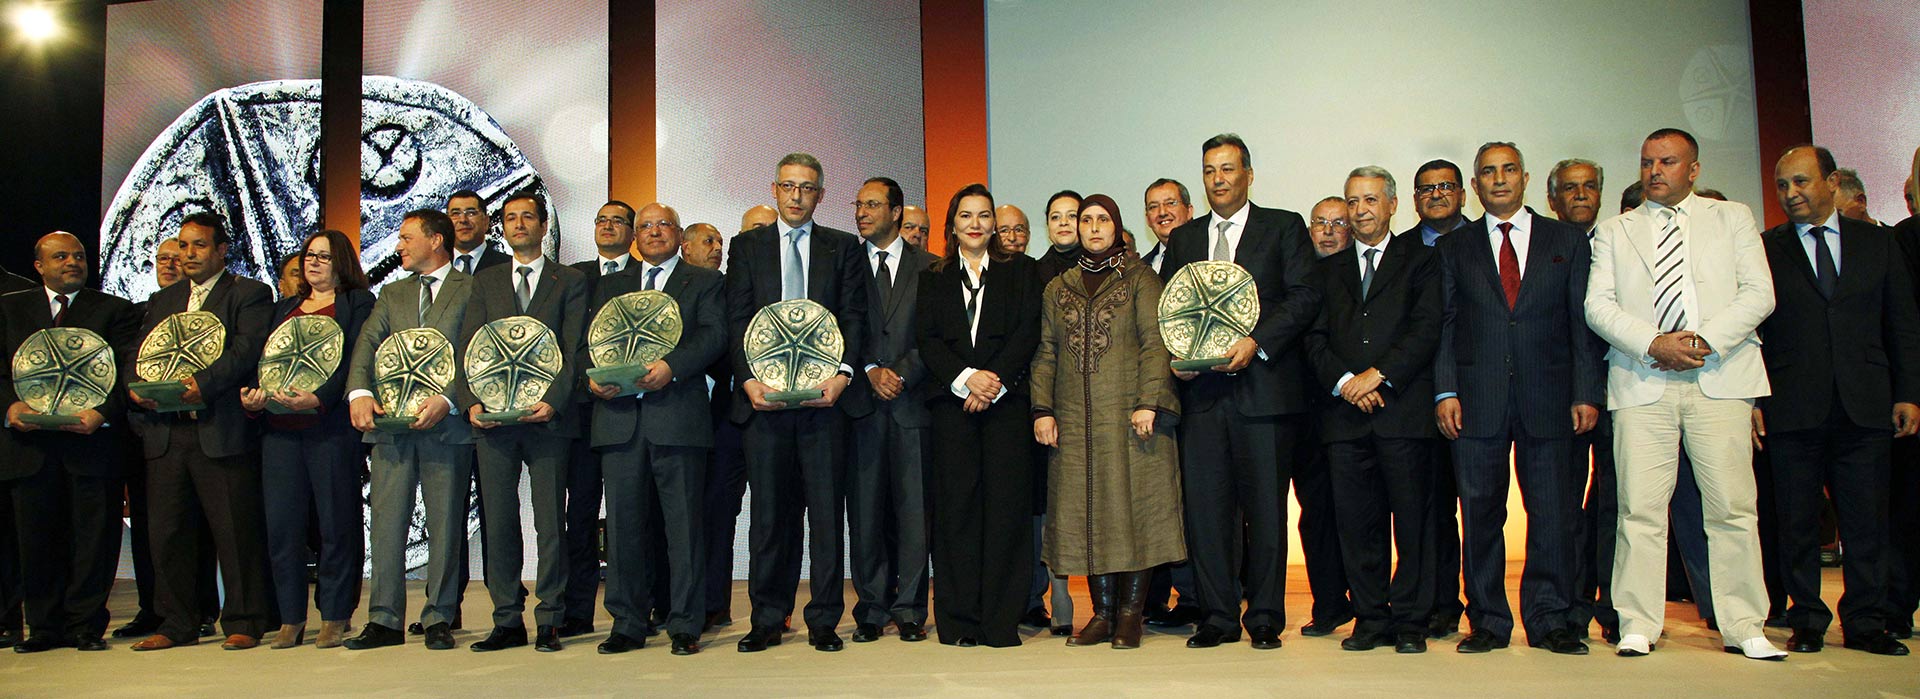 7 décembre 2014 : <strong>SAR la Princesse Lalla Hasnaa</strong> préside la cérémonie de remise des Trophées Lalla Hasnaa Littoral Durable au centre international de conférence Mohammed VI a Skhirate